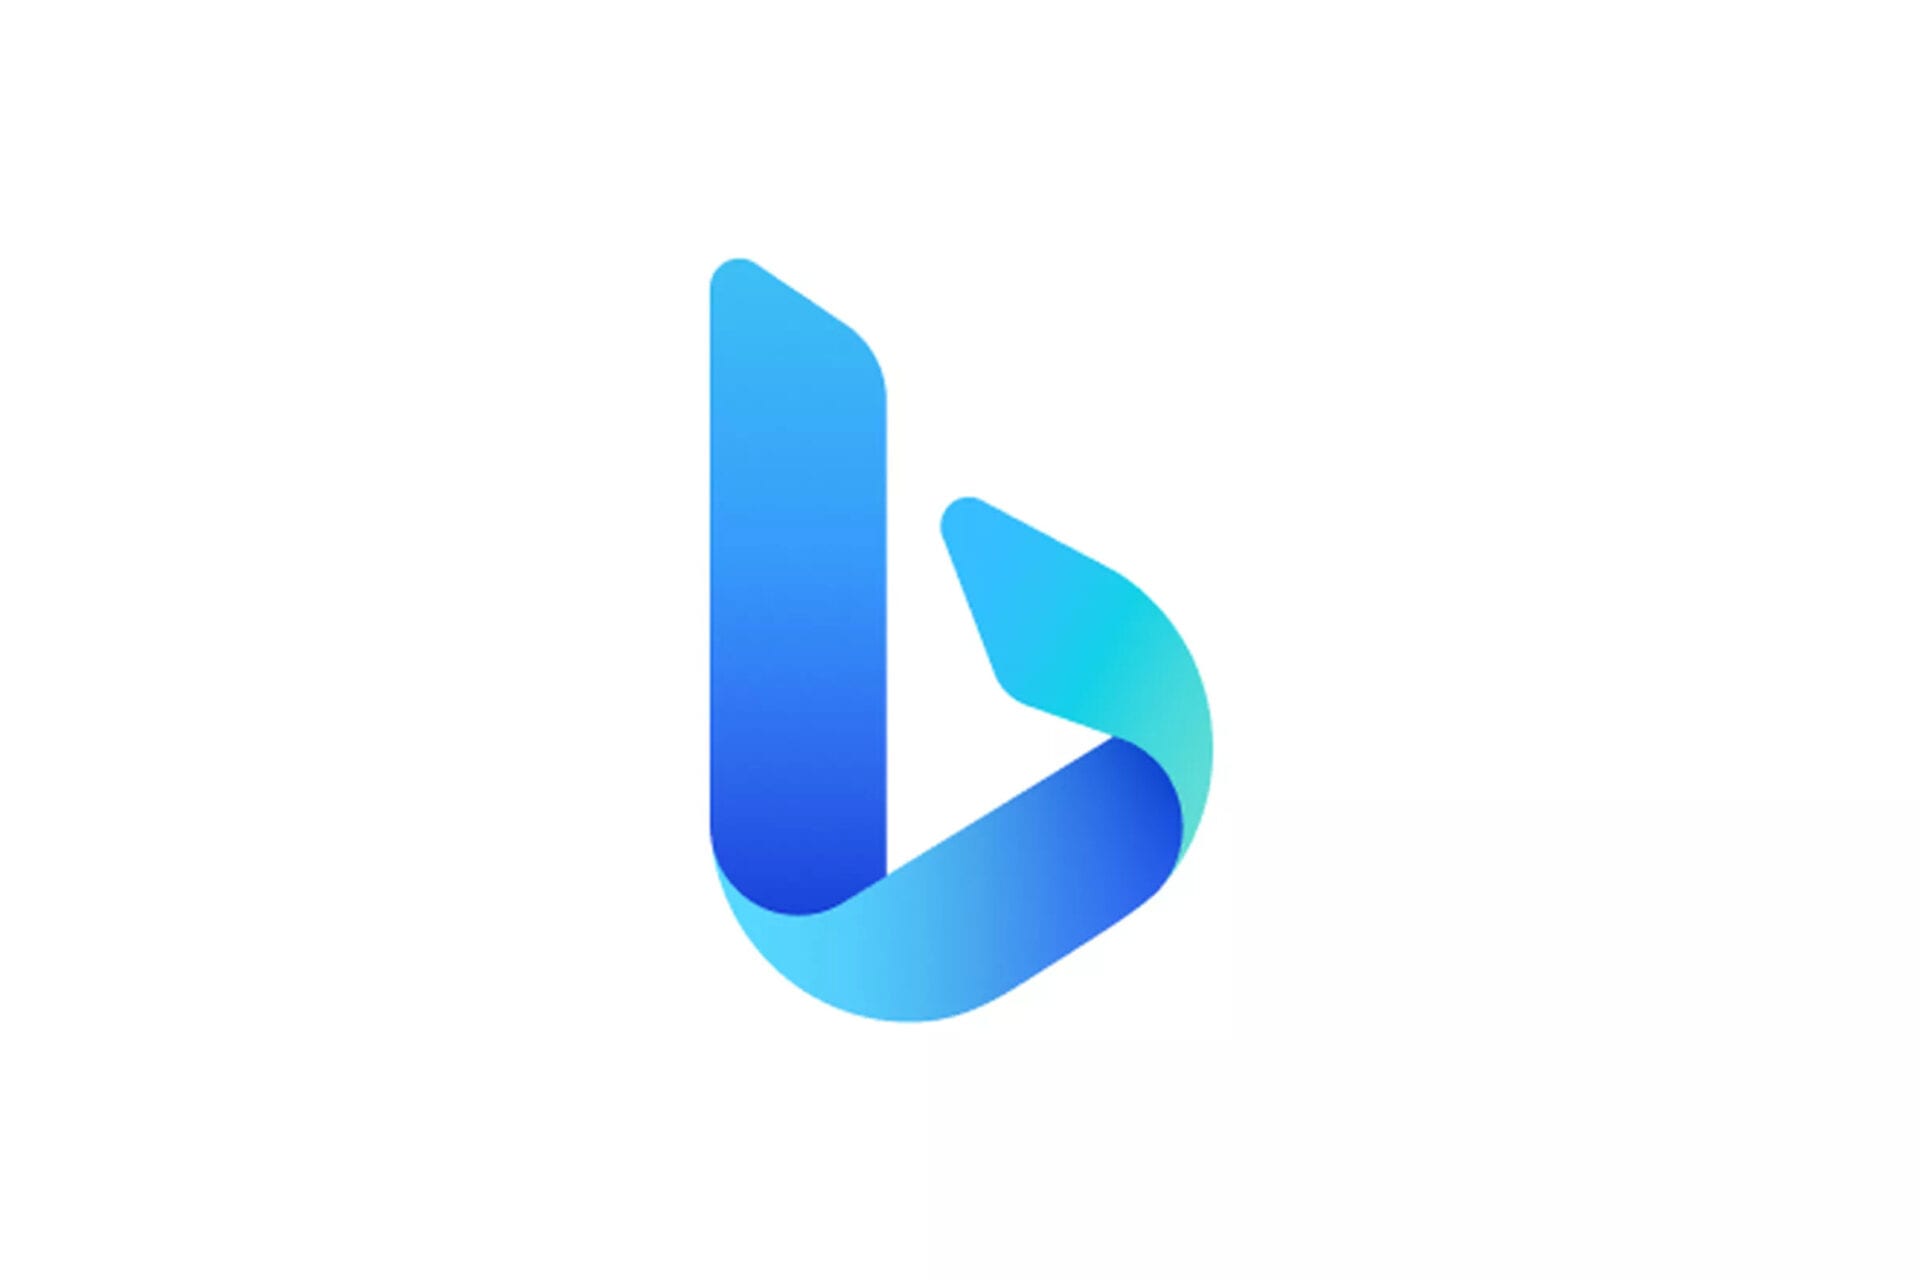 A Microsoft muda a marca do Bing para "Microsoft Bing" com novos logotipos